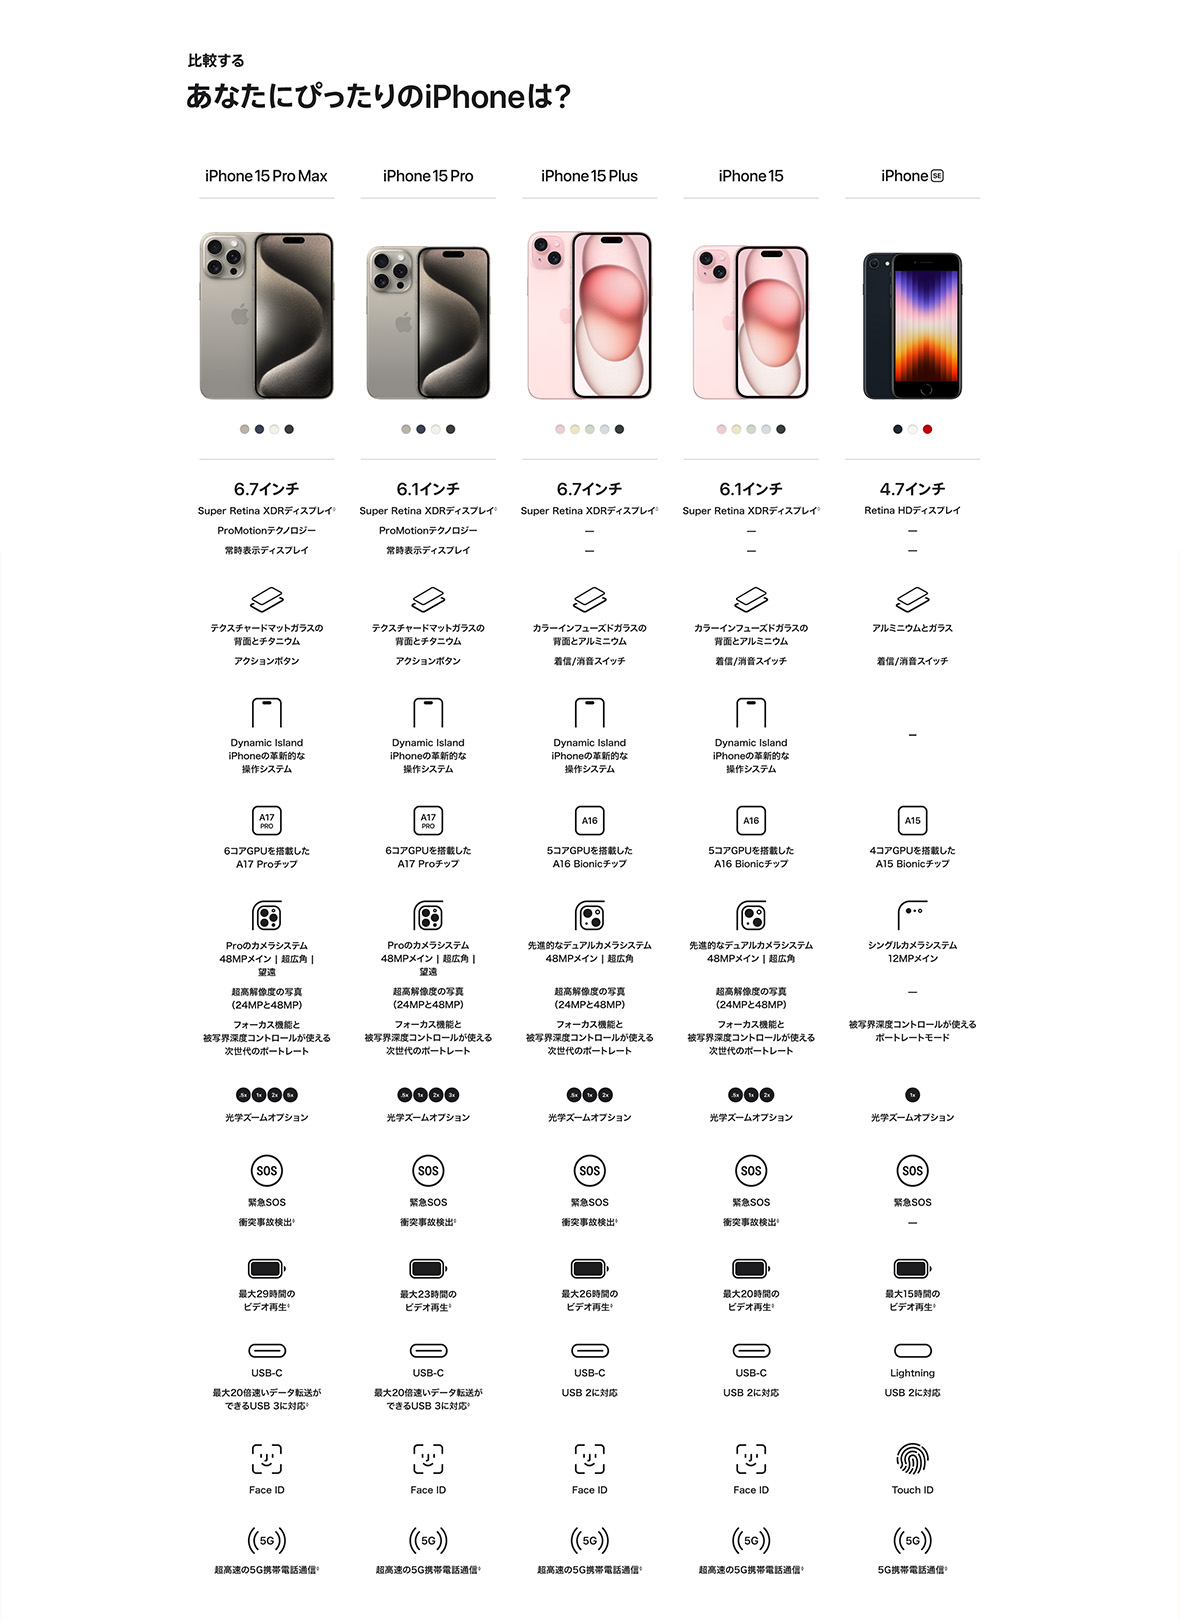 比較する あなたにぴったりのiPhoneは？ iPhone 15 Pro Max 6.7インチ Super Retina XDRディスプレイ◊ ProMotionテクノロジー 常時表示ディスプレイ テクスチャードマットガラスの背面とチタニウム アクションボタン Dynamic IslandiPhoneの革新的な操作システム 6コアGPUを搭載したA17 Proチップ Proのカメラシステム48MPメイン | 超広角 | 望遠 超高解像度の写真（24MPと48MP） フォーカス機能と被写界深度コントロールが使える次世代のポートレート .5x 1x 2x 5x 光学ズームオプション 緊急SOS 衝突事故検出◊ 最大29時間のビデオ再生◊ USB-C 最大20倍速いデータ転送ができるUSB 3に対応◊ Face ID 超高速の5G携帯電話通信◊ iPhone 15 Pro 6.1インチ Super Retina XDRディスプレイ◊ ProMotionテクノロジー 常時表示ディスプレイ テクスチャードマットガラスの背面とチタニウム アクションボタン Dynamic IslandiPhoneの革新的な操作システム 6コアGPUを搭載したA17 Proチップ Proのカメラシステム48MPメイン | 超広角 | 望遠 超高解像度の写真（24MPと48MP） フォーカス機能と被写界深度コントロールが使える次世代のポートレート .5x 1x 2x 3x 光学ズームオプション 緊急SOS 衝突事故検出◊ 最大23時間のビデオ再生◊ USB-C 最大20倍速いデータ転送ができるUSB 3に対応◊ 超高速の5G携帯電話通信◊ iPhone 15 Plus 6.7インチ Super Retina XDRディスプレイ◊ — — カラーインフューズドガラスの背面とアルミニウム 着信/消音スイッチ Dynamic IslandiPhoneの革新的な操作システム 5コアGPUを搭載したA16 Bionicチップ 先進的なデュアルカメラシステム48MPメイン | 超広角 超高解像度の写真（24MPと48MP） フォーカス機能と被写界深度コントロールが使える次世代のポートレート .5x 1x 2x 光学ズームオプション 光学ズームオプション 最大26時間のビデオ再生◊ USB-C USB 2に対応 Face ID 超高速の5G携帯電話通信◊ iPhone 15 6.1インチ Super Retina XDRディスプレイ◊ — — カラーインフューズドガラスの背面とアルミニウム 着信/消音スイッチ Dynamic IslandiPhoneの革新的な操作システム 5コアGPUを搭載したA16 Bionicチップ 先進的なデュアルカメラシステム48MPメイン | 超広角 超高解像度の写真（24MPと48MP） フォーカス機能と被写界深度コントロールが使える次世代のポートレート .5x 1x 2x 光学ズームオプション 緊急SOS 衝突事故検出◊ 最大20時間のビデオ再生◊ USB-C USB 2に対応 Face ID 超高速の5G携帯電話通信◊ iPhone SE 4.7インチ Retina HDディスプレイ — — アルミニウムとガラス 着信/消音スイッチ 4コアGPUを搭載したA15 Bionicチップ シングルカメラシステム12MPメイン — 被写界深度コントロールが使えるポートレートモード 1x 光学ズームオプション 緊急SOS — 最大15時間のビデオ再生◊ Lightning USB 2に対応 Touch ID 5G携帯電話通信◊